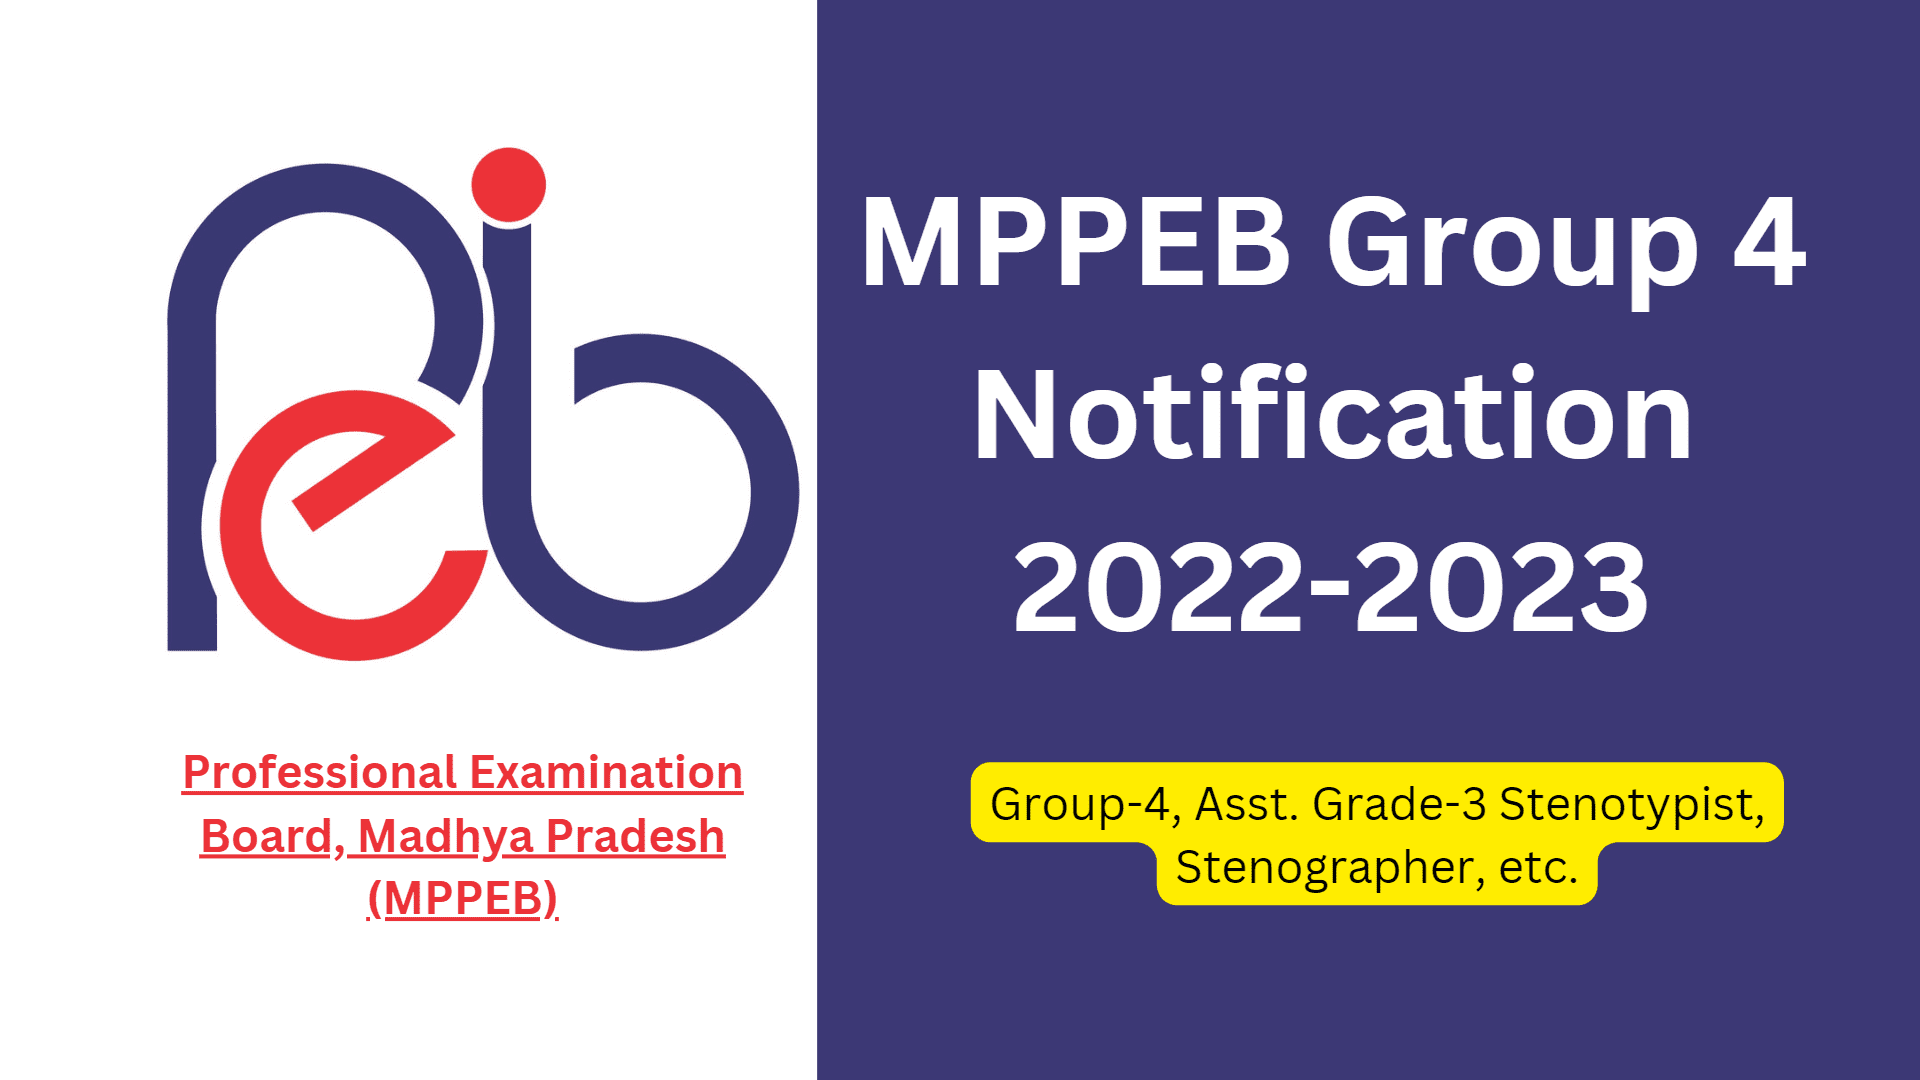 MPPEB Group 4 Notification 2022-2023